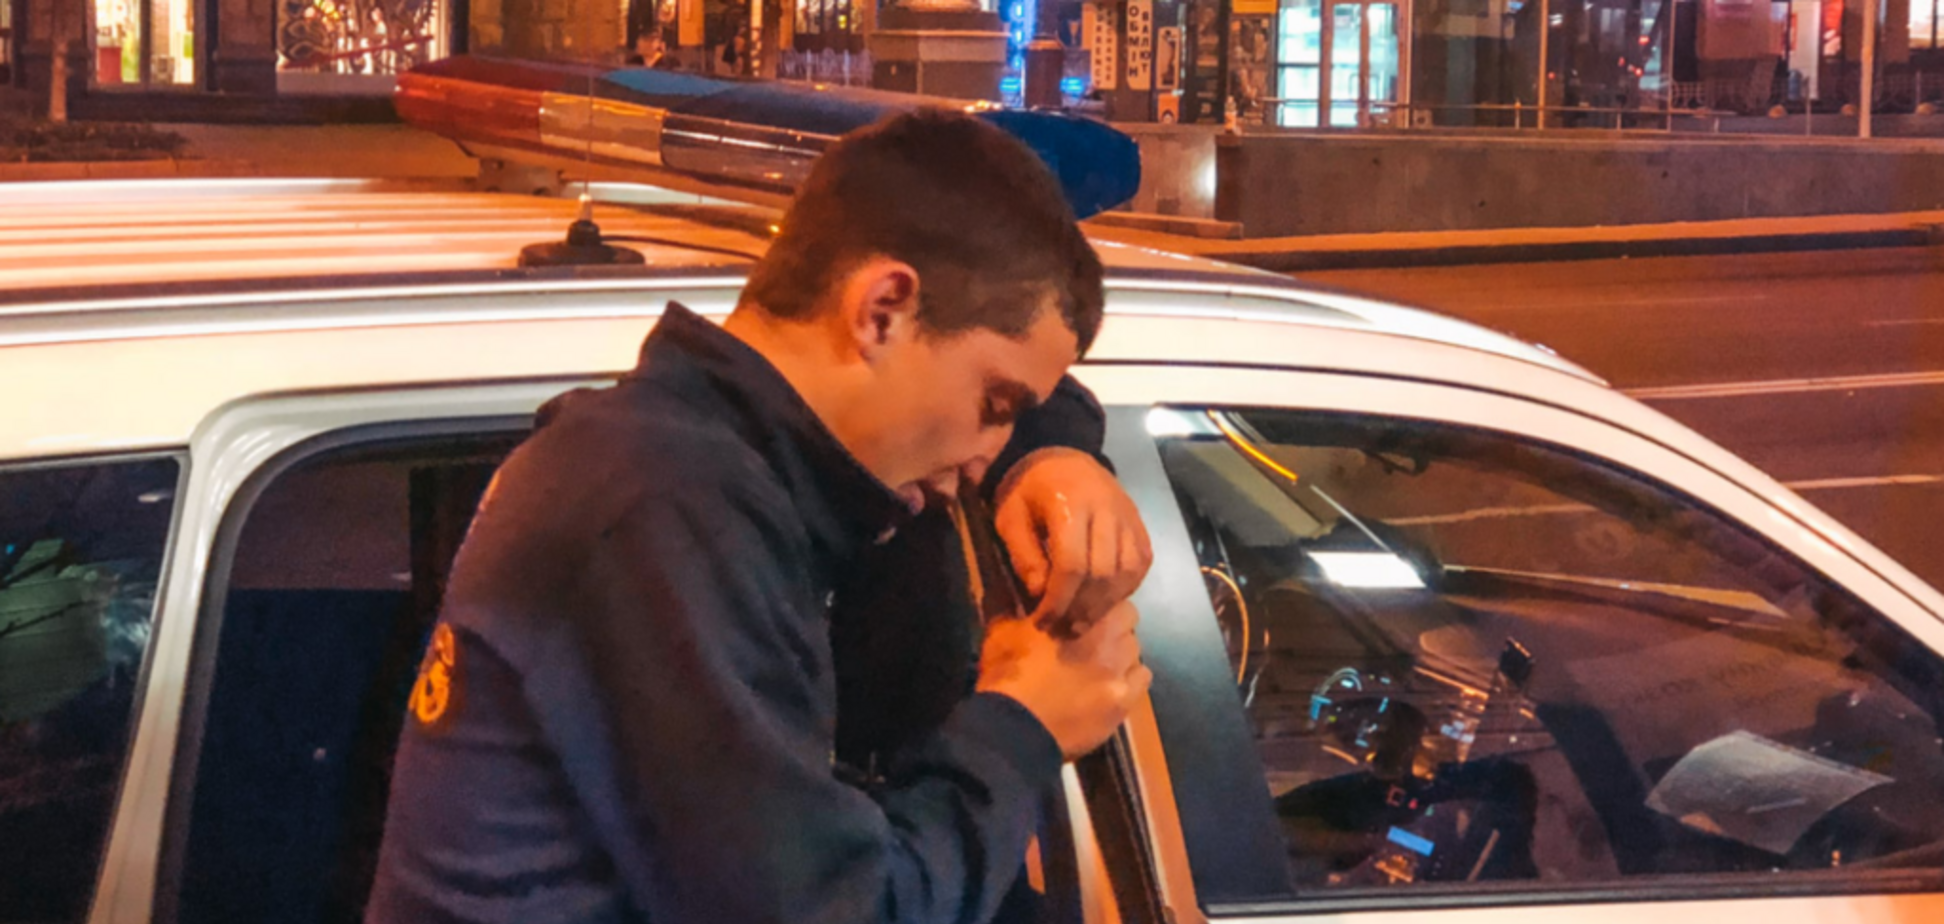 Плакал и обзывался: в центре Киева заметили неадекватного человека 